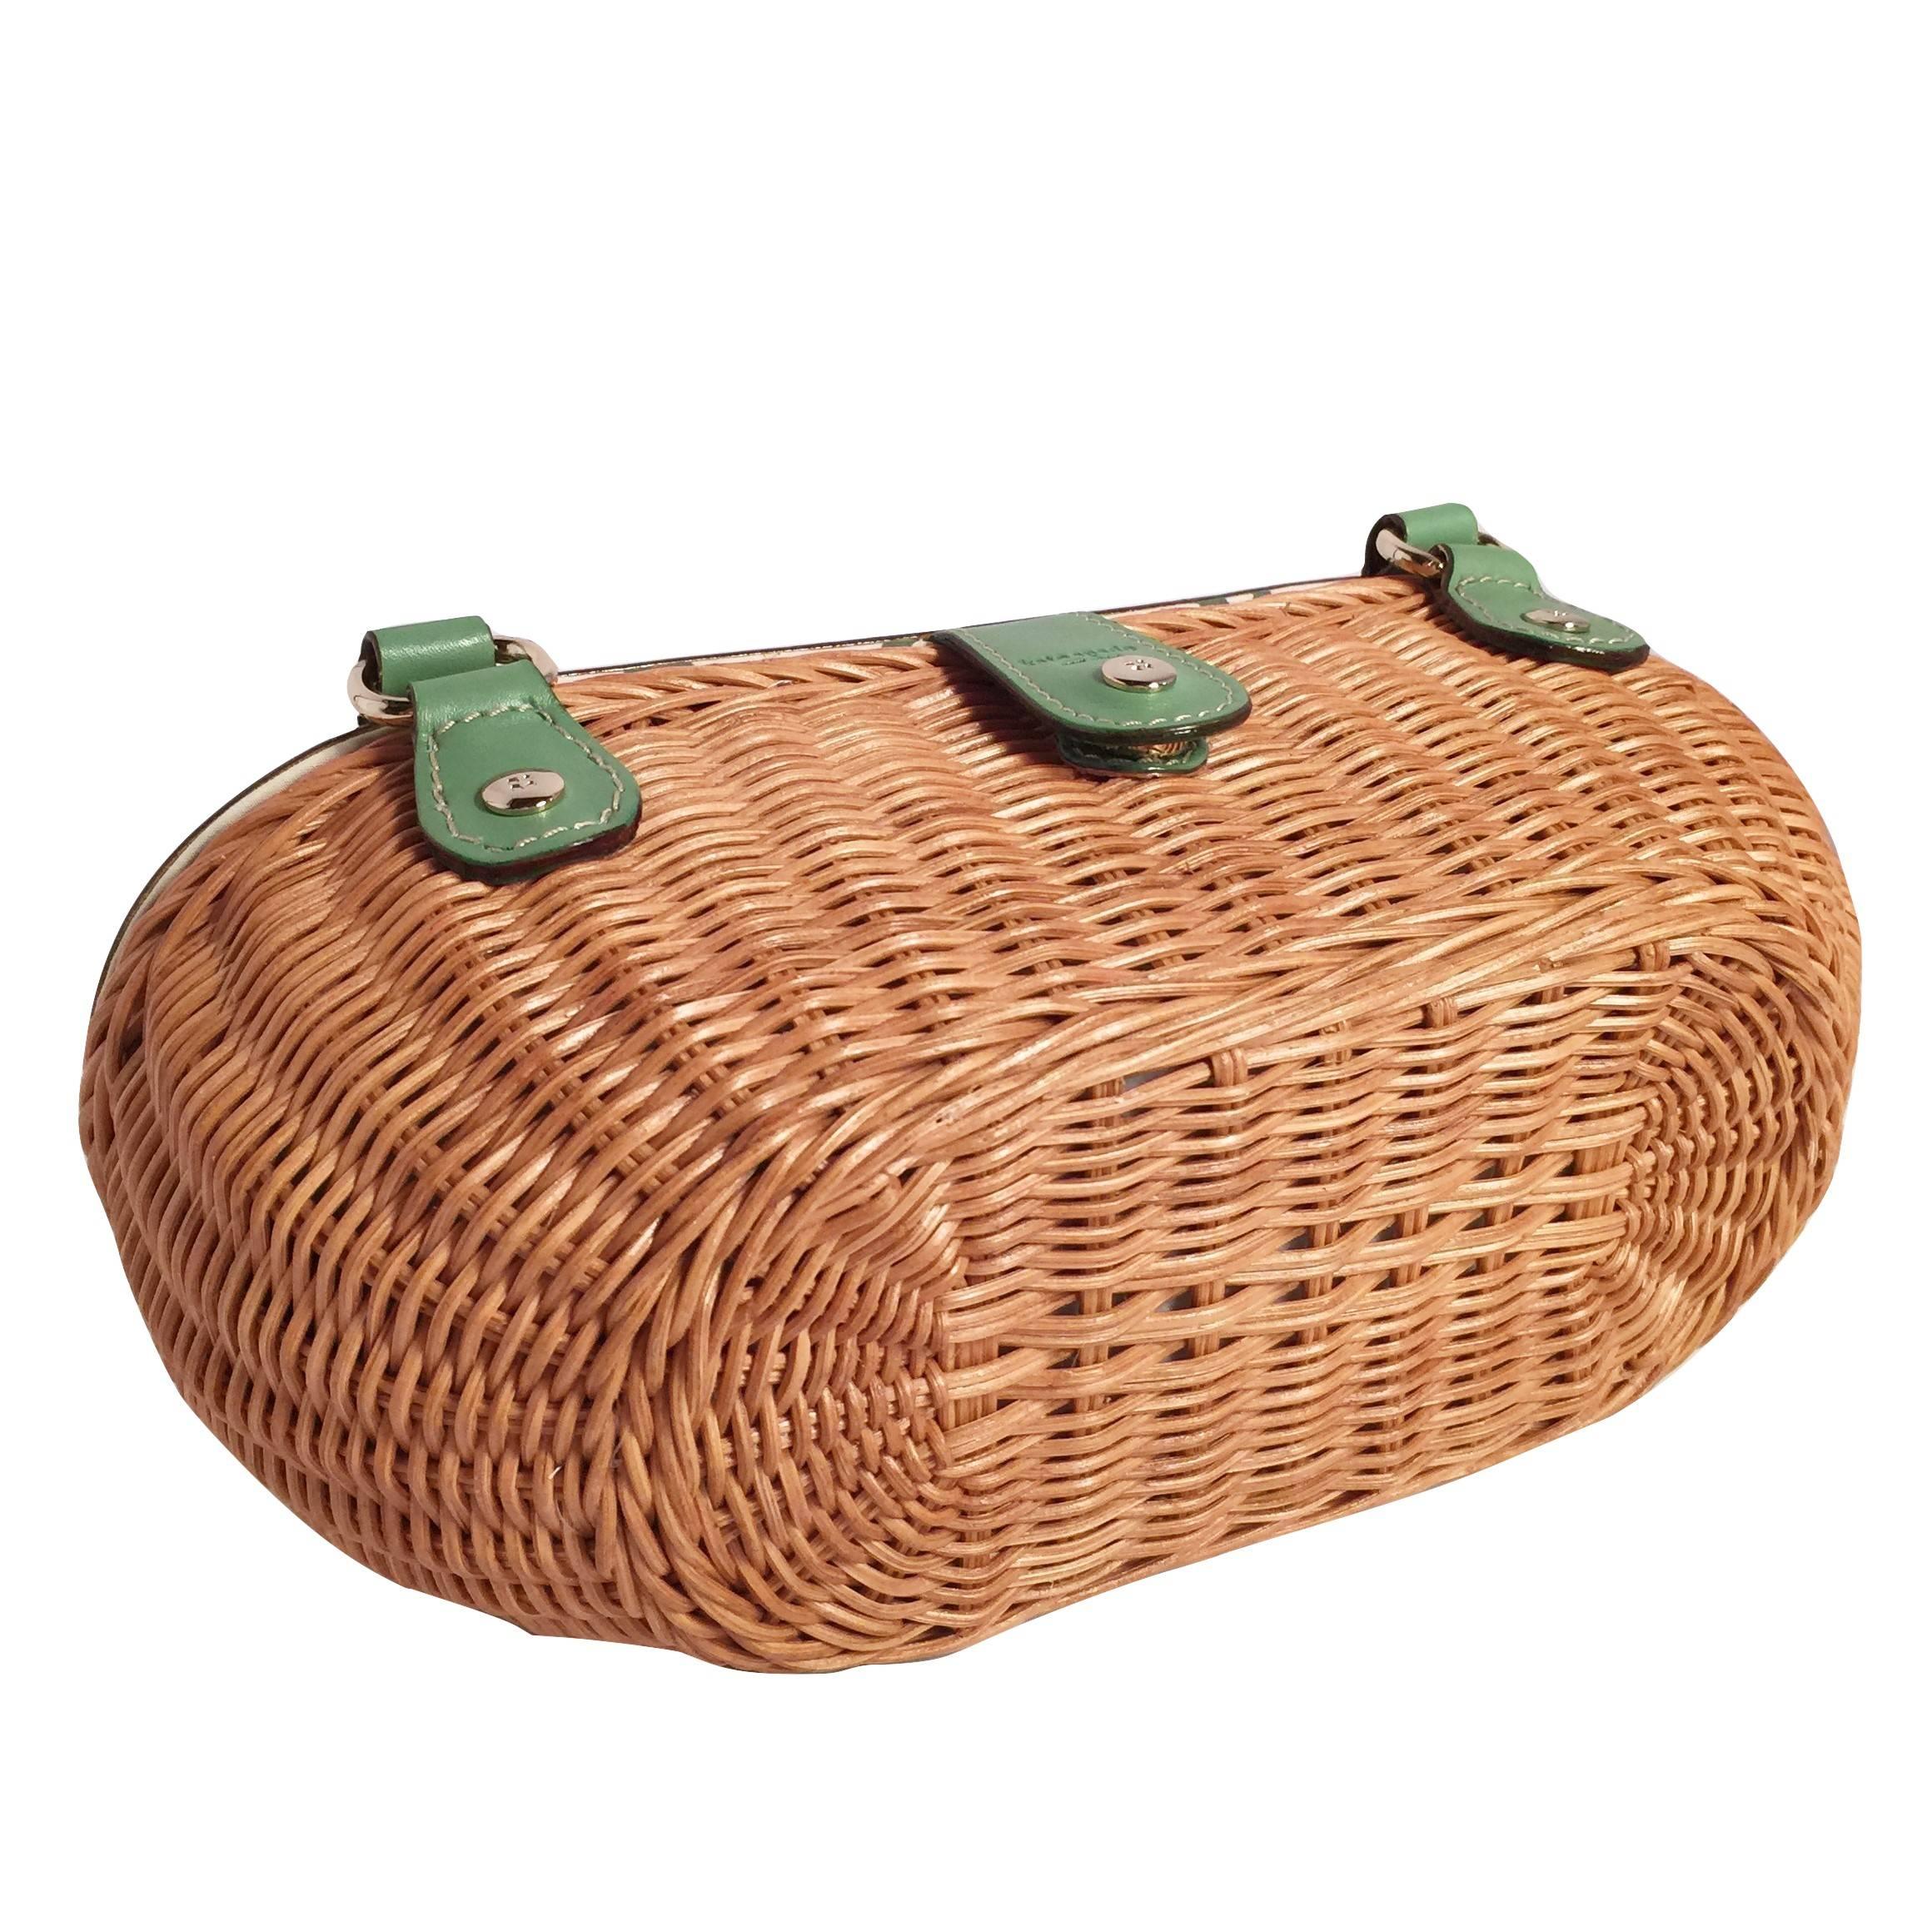 New Kate Spade Rare Collectible Spring 2005 Green Wicker Basket Bag  2